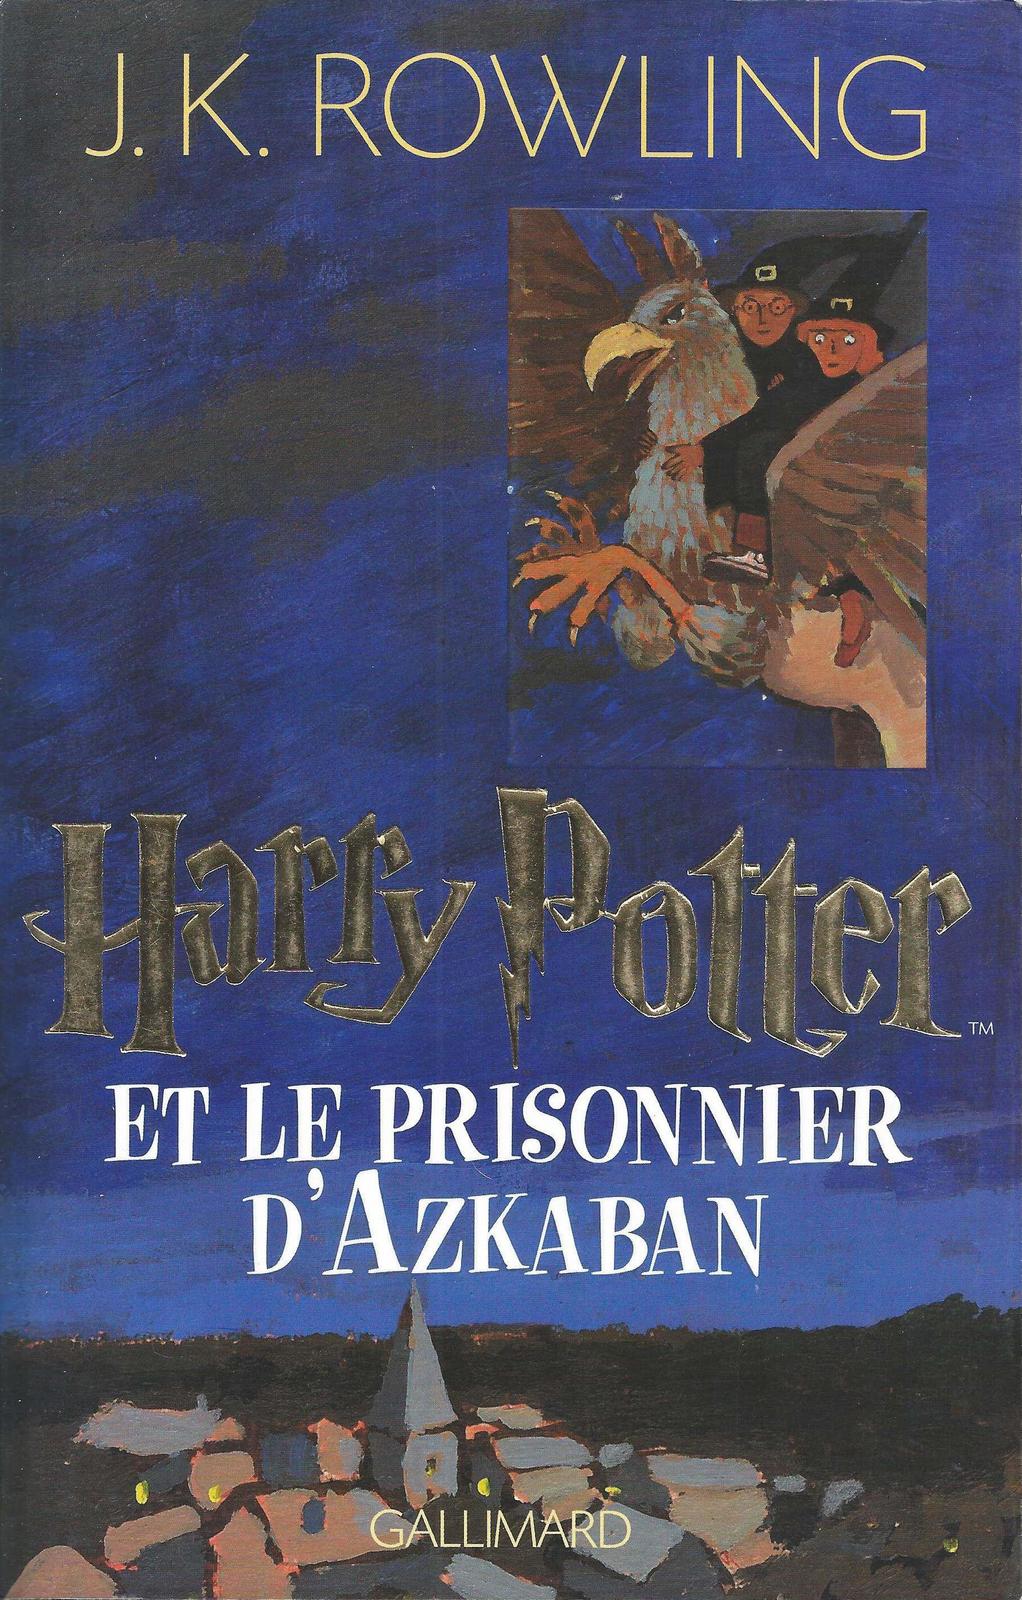 Harry Potter et le prisonnier d'Azkaban (French language, 1999, Éditions Gallimard)